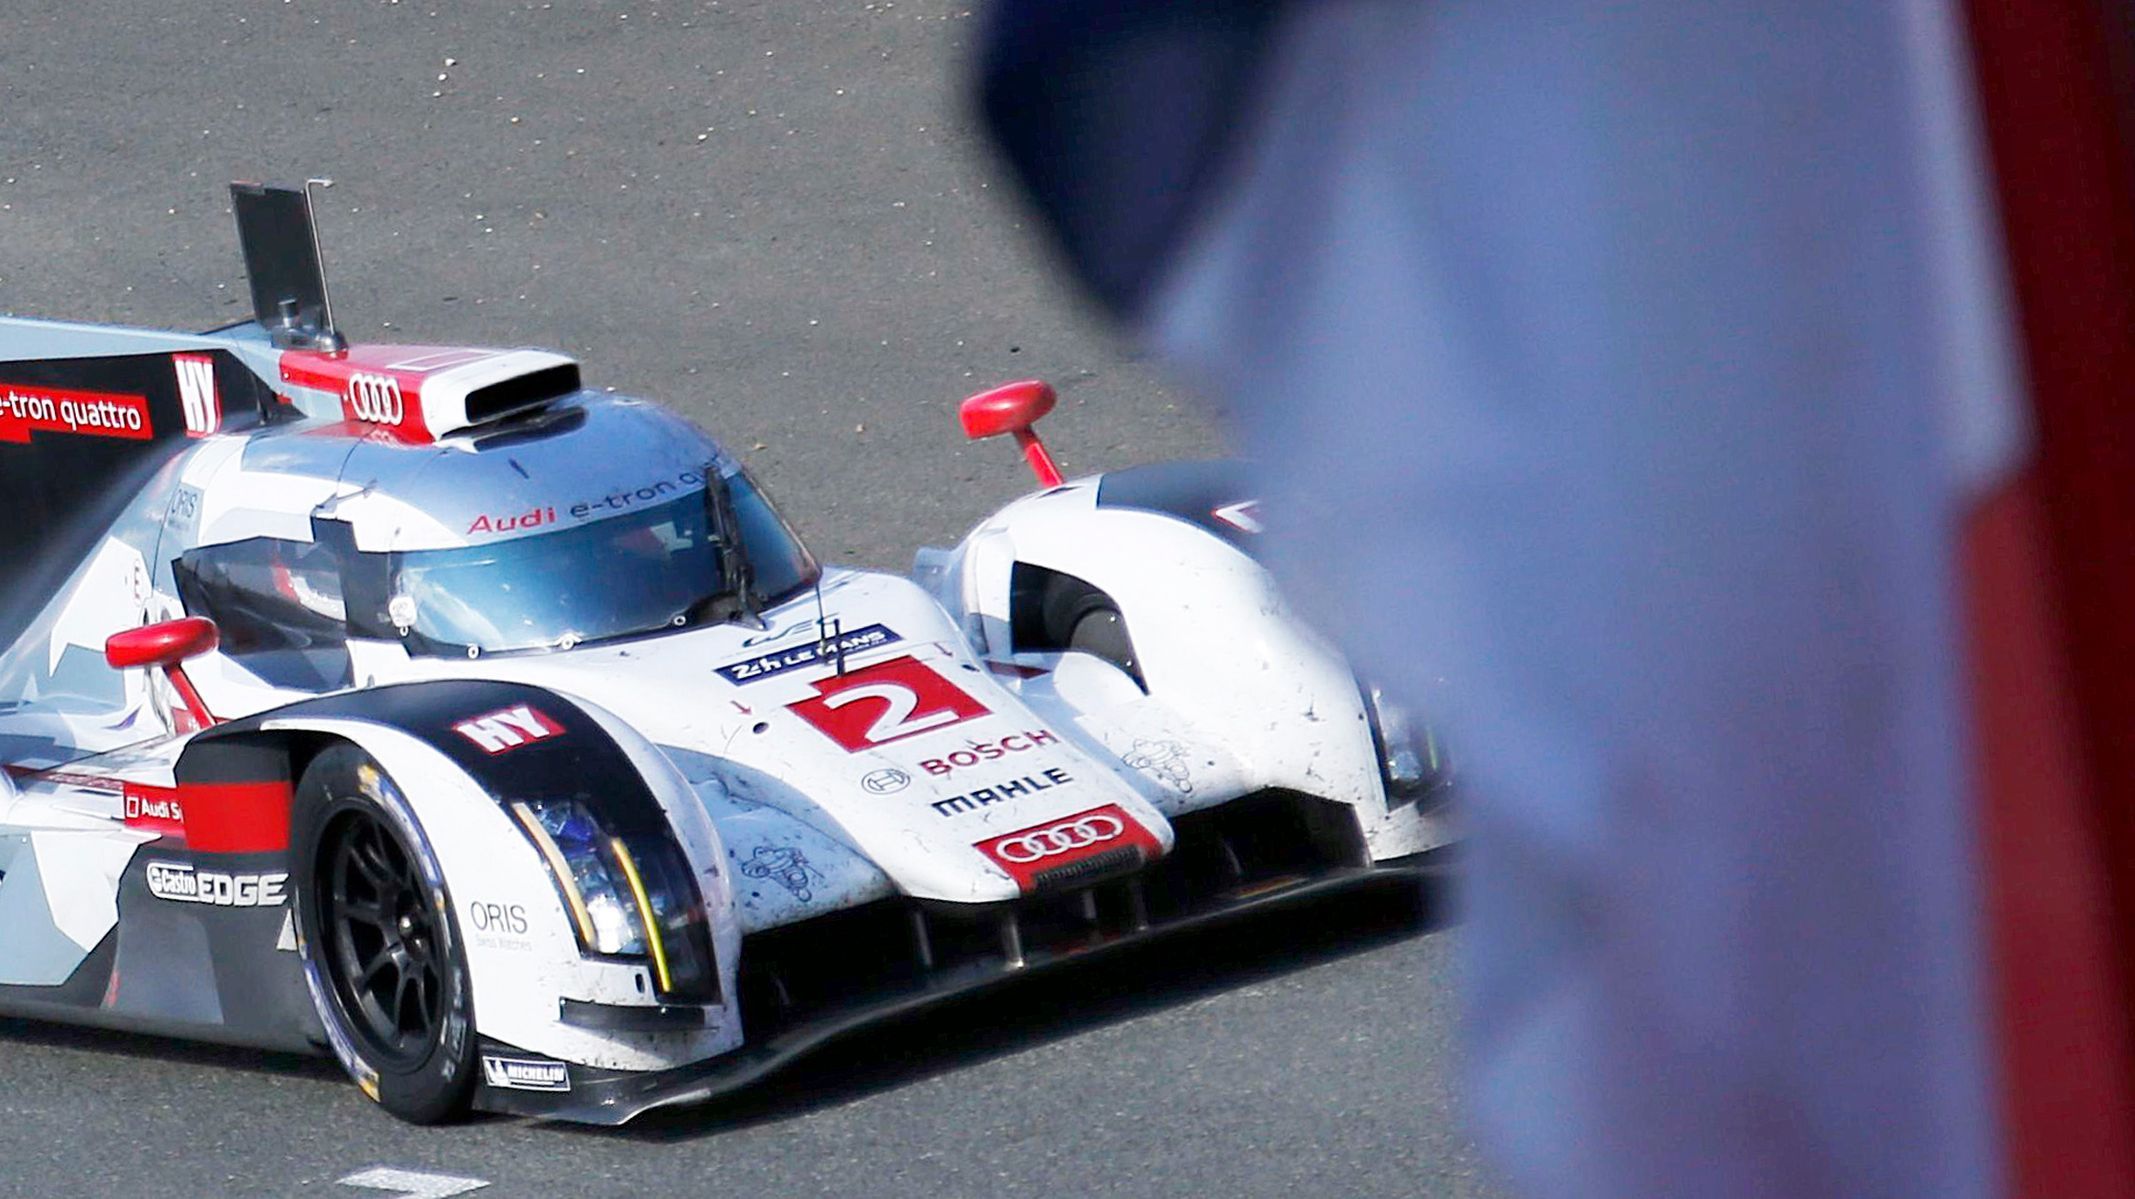 Le Mans 2014: Andre Lotterer, Audi R18 e-tron Quattro